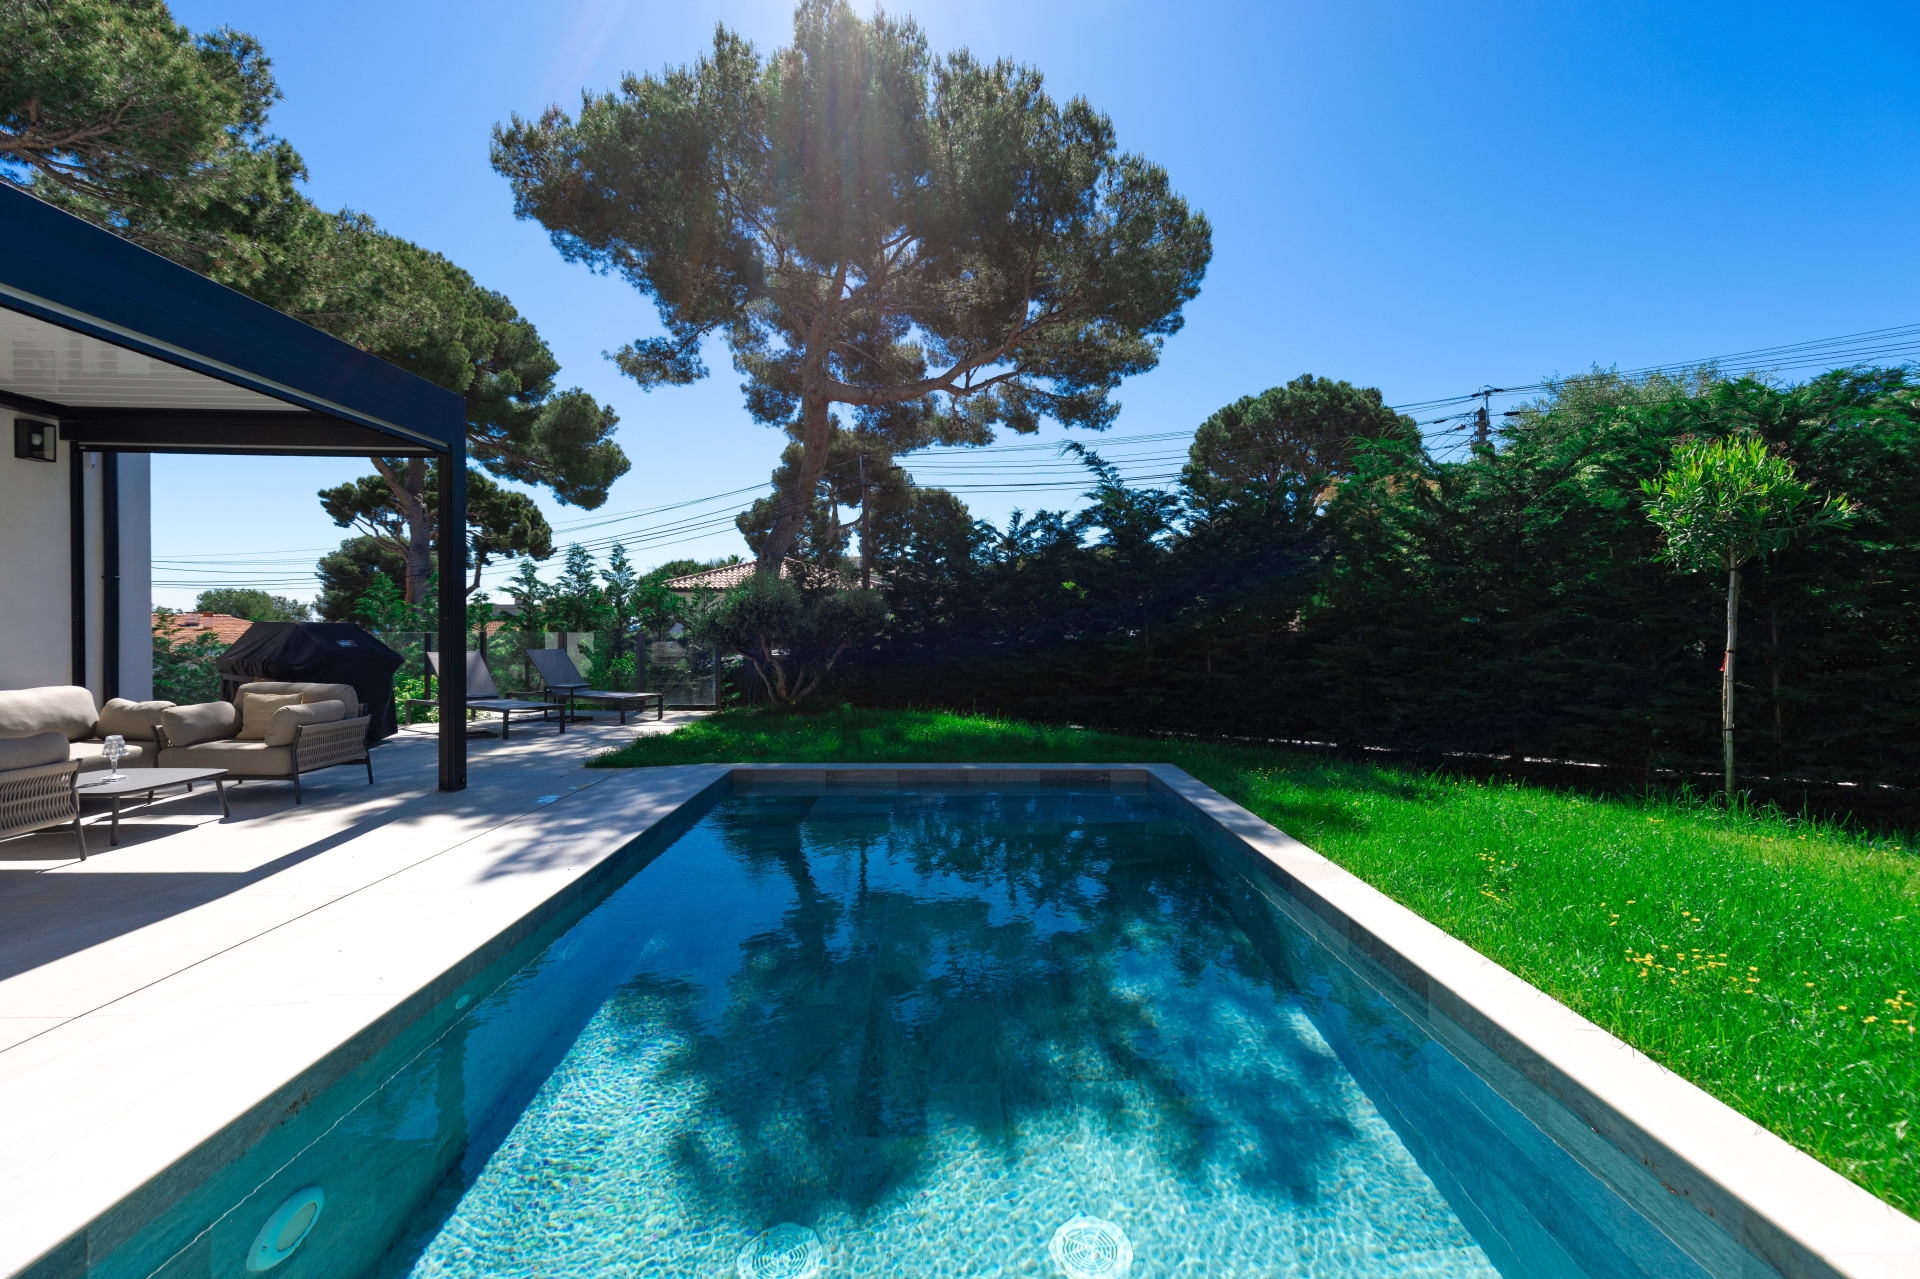 Dotta Villa a vendre - VILLA STECYA - Roquebrune-Cap-Martin - Roquebrune-Cap-Martin - img074a4994